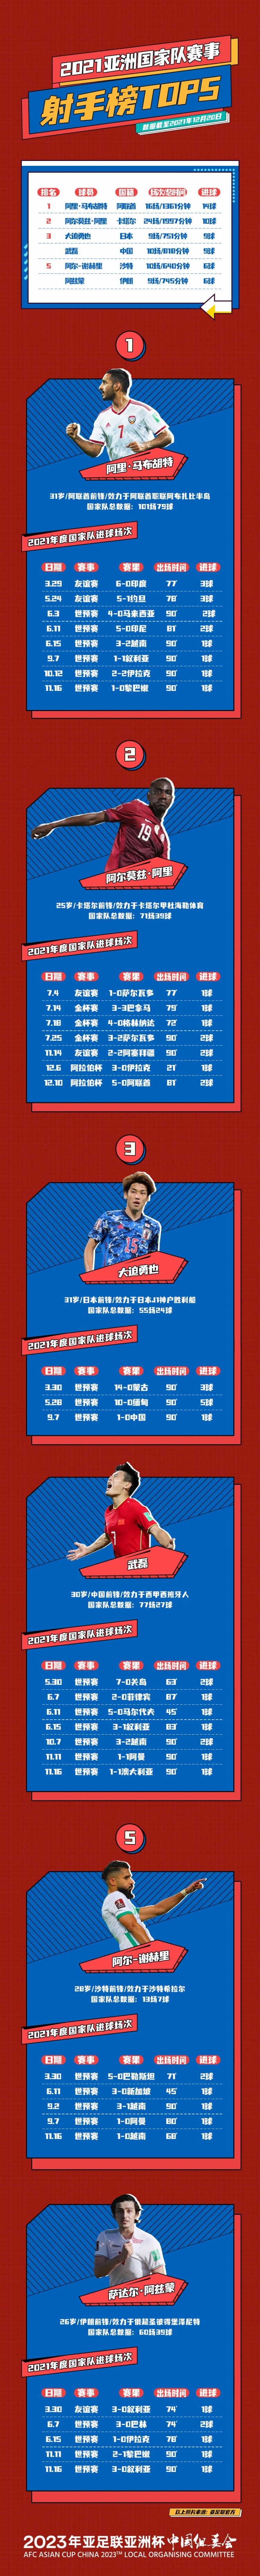 2021年亚洲国家队赛事射手榜：武磊10